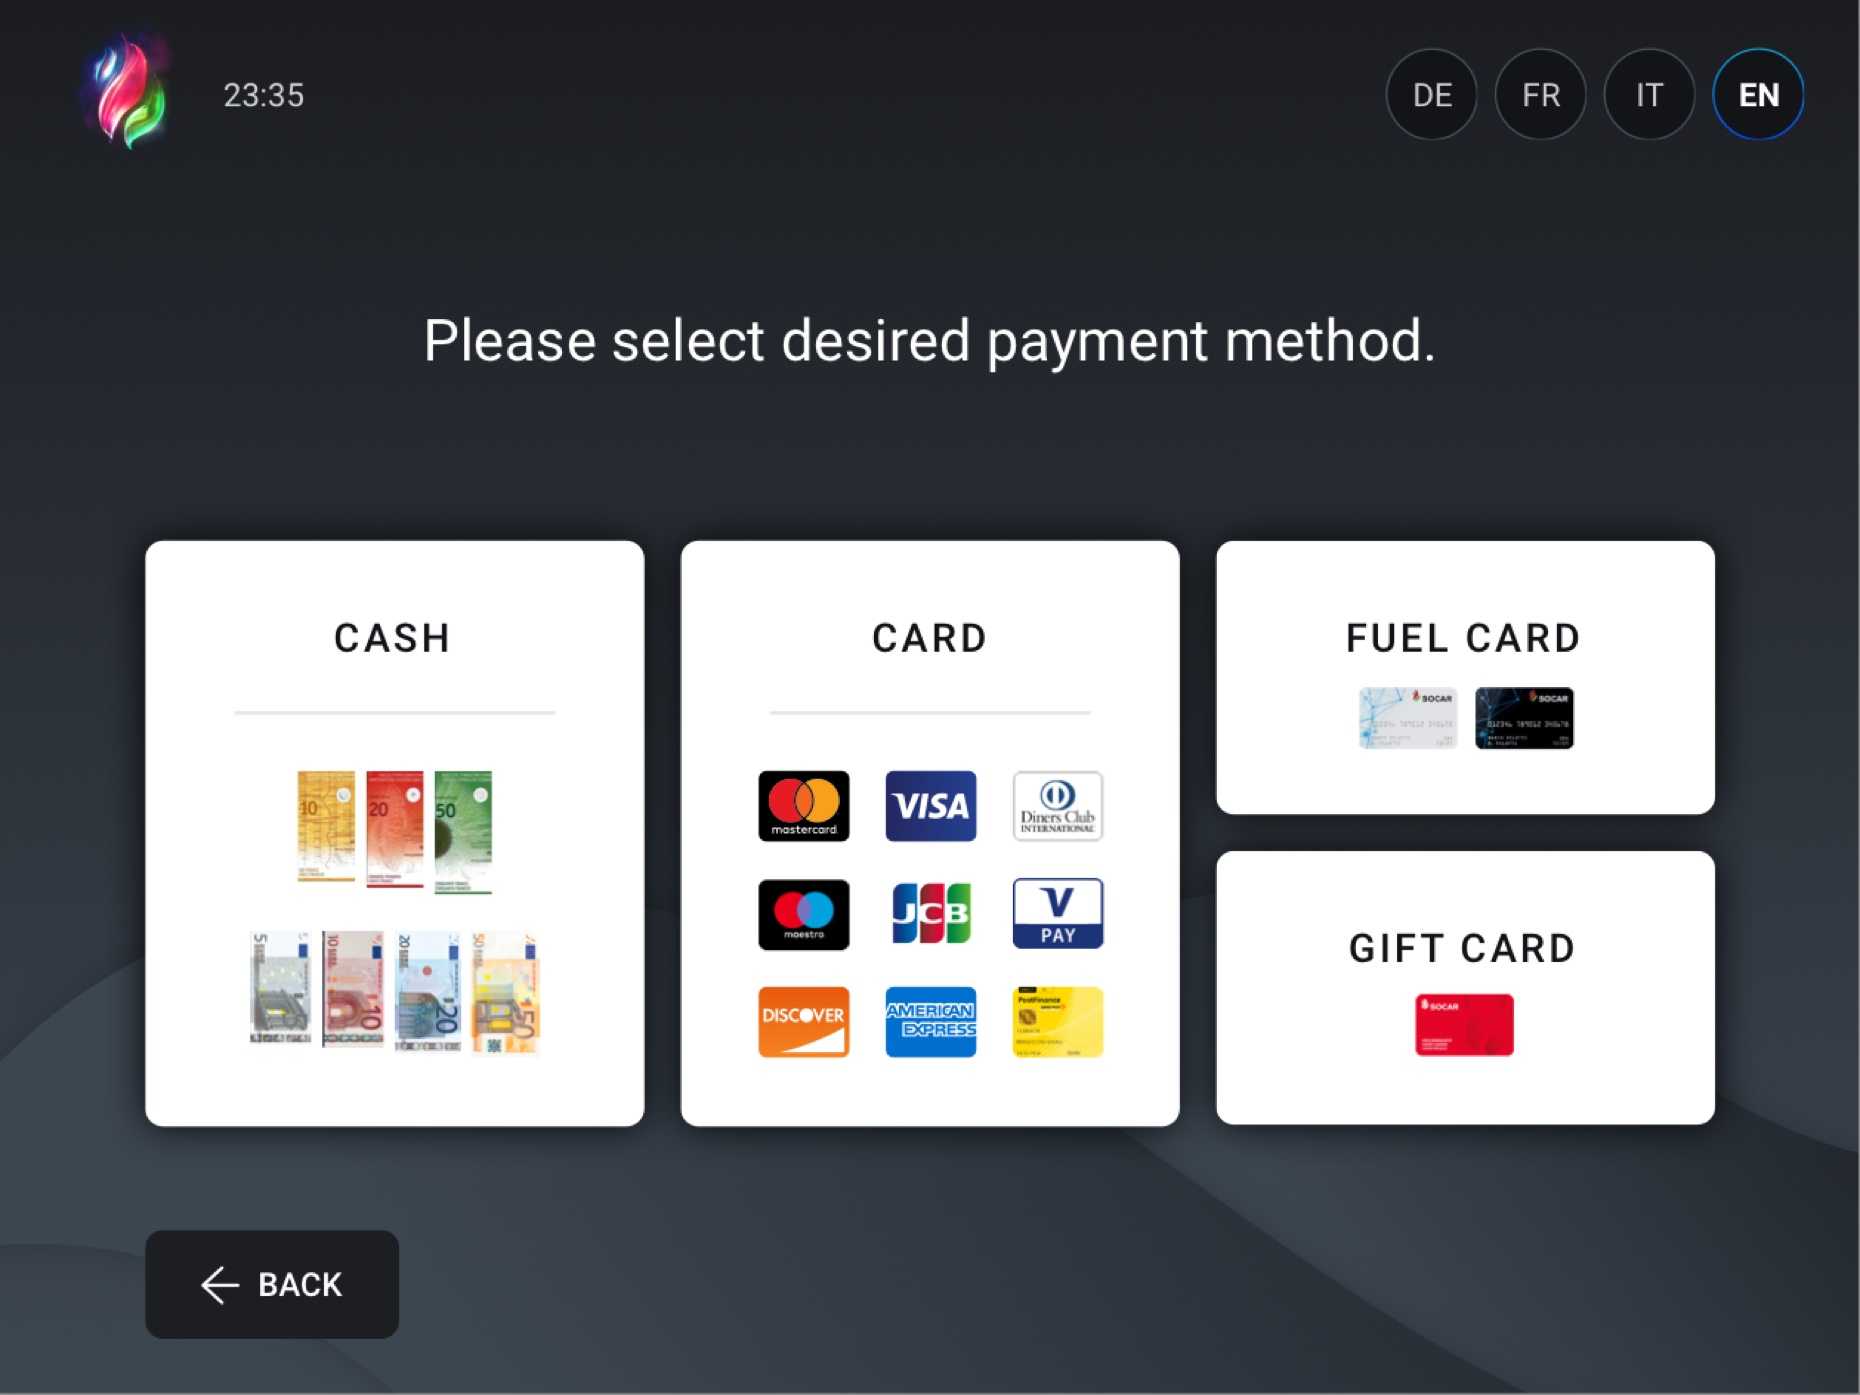 UI-design til indlejret system, hvor brugerne vælger betalingsmetode i selvbetjeningskassen